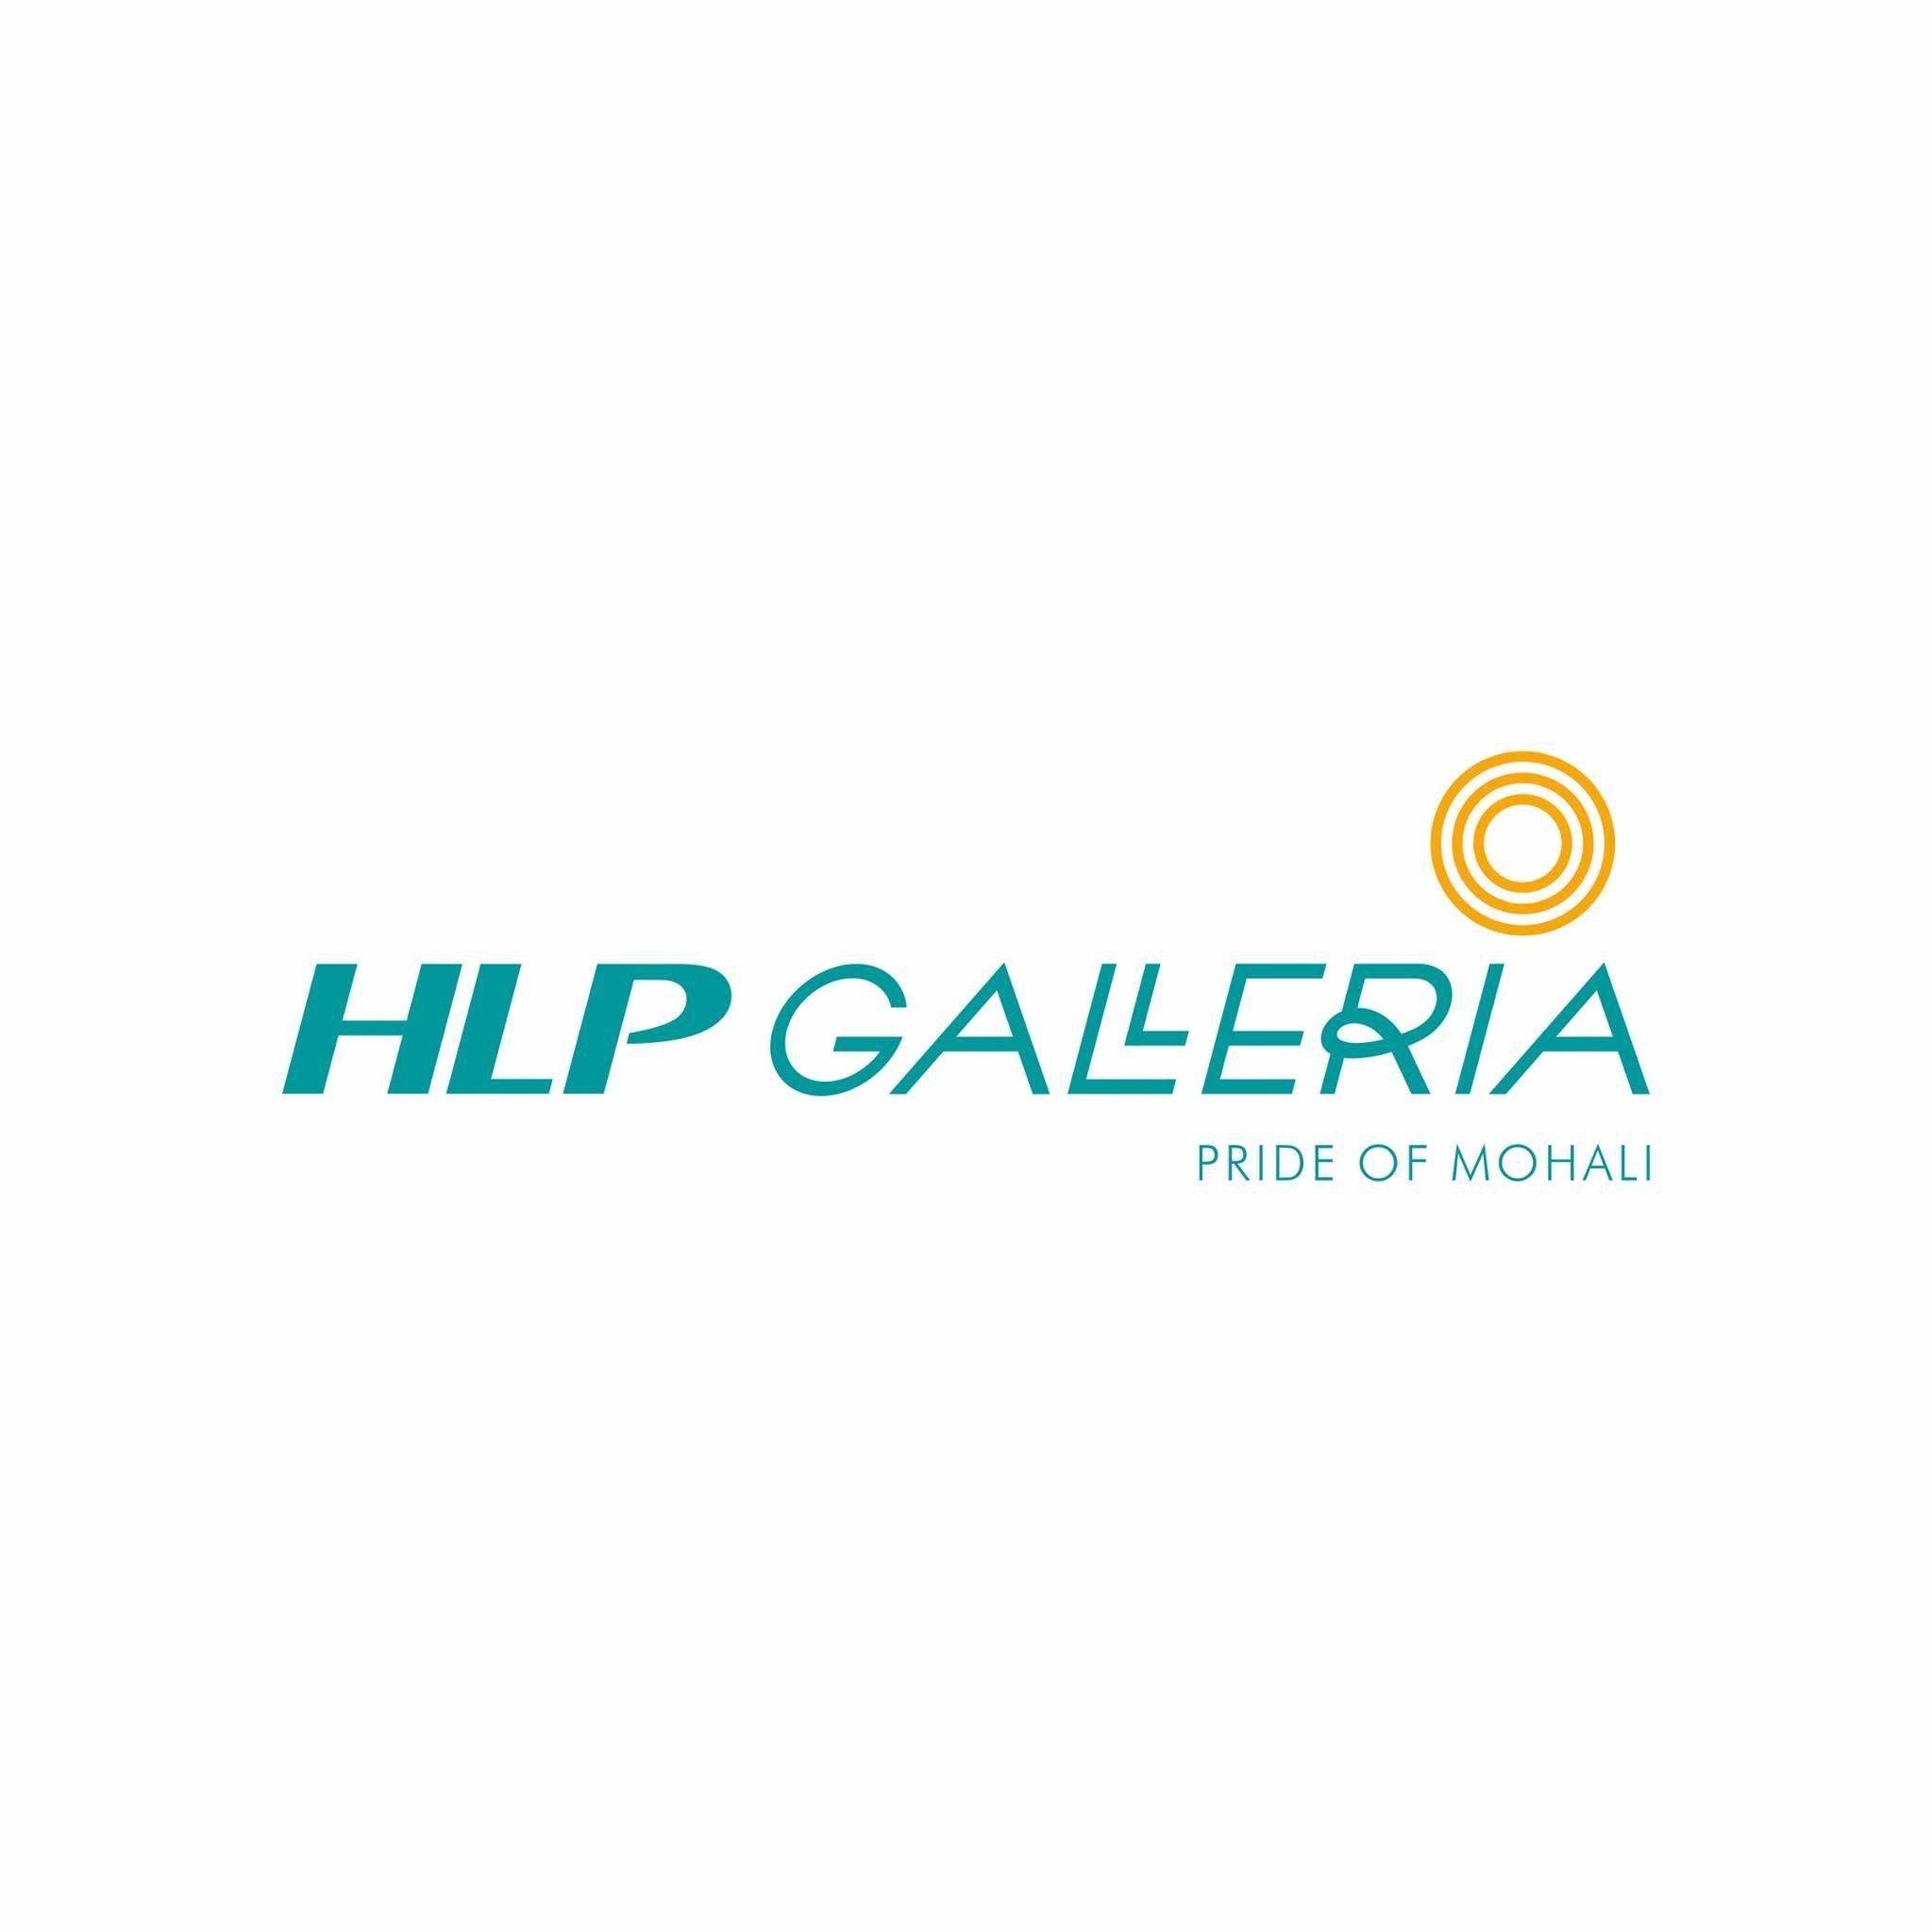 HLP Galleria